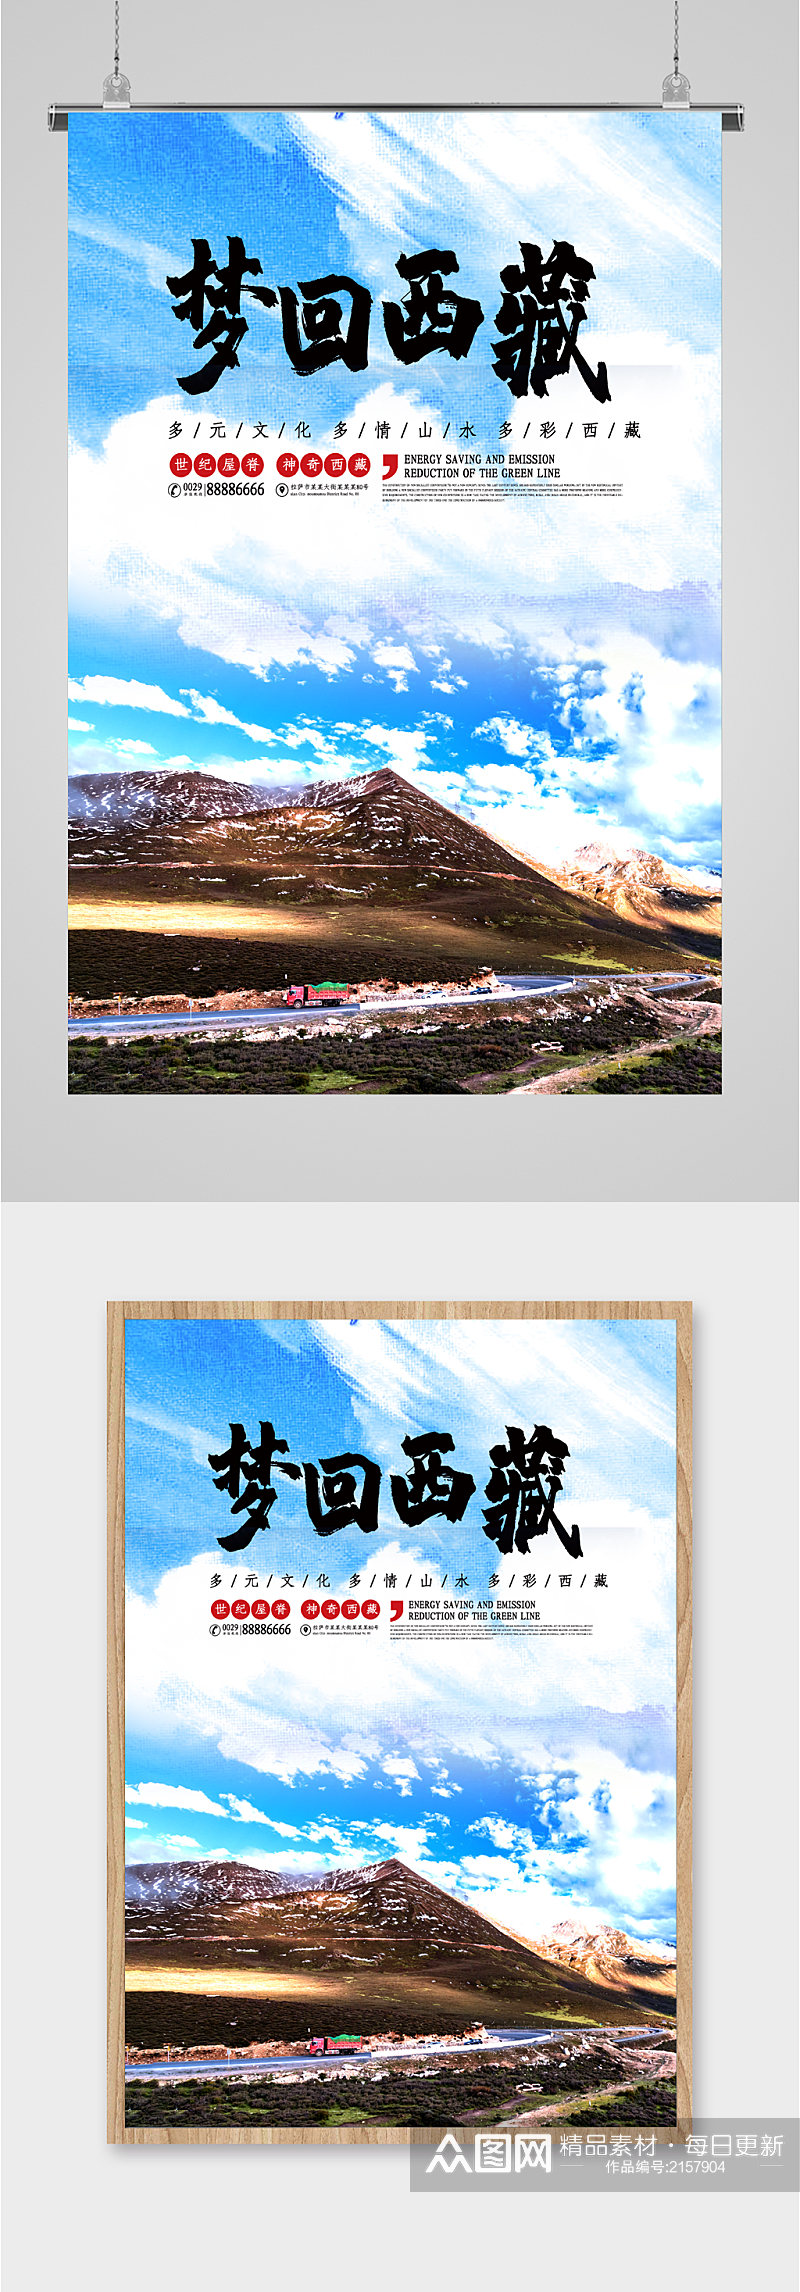 梦回西藏旅游海报素材